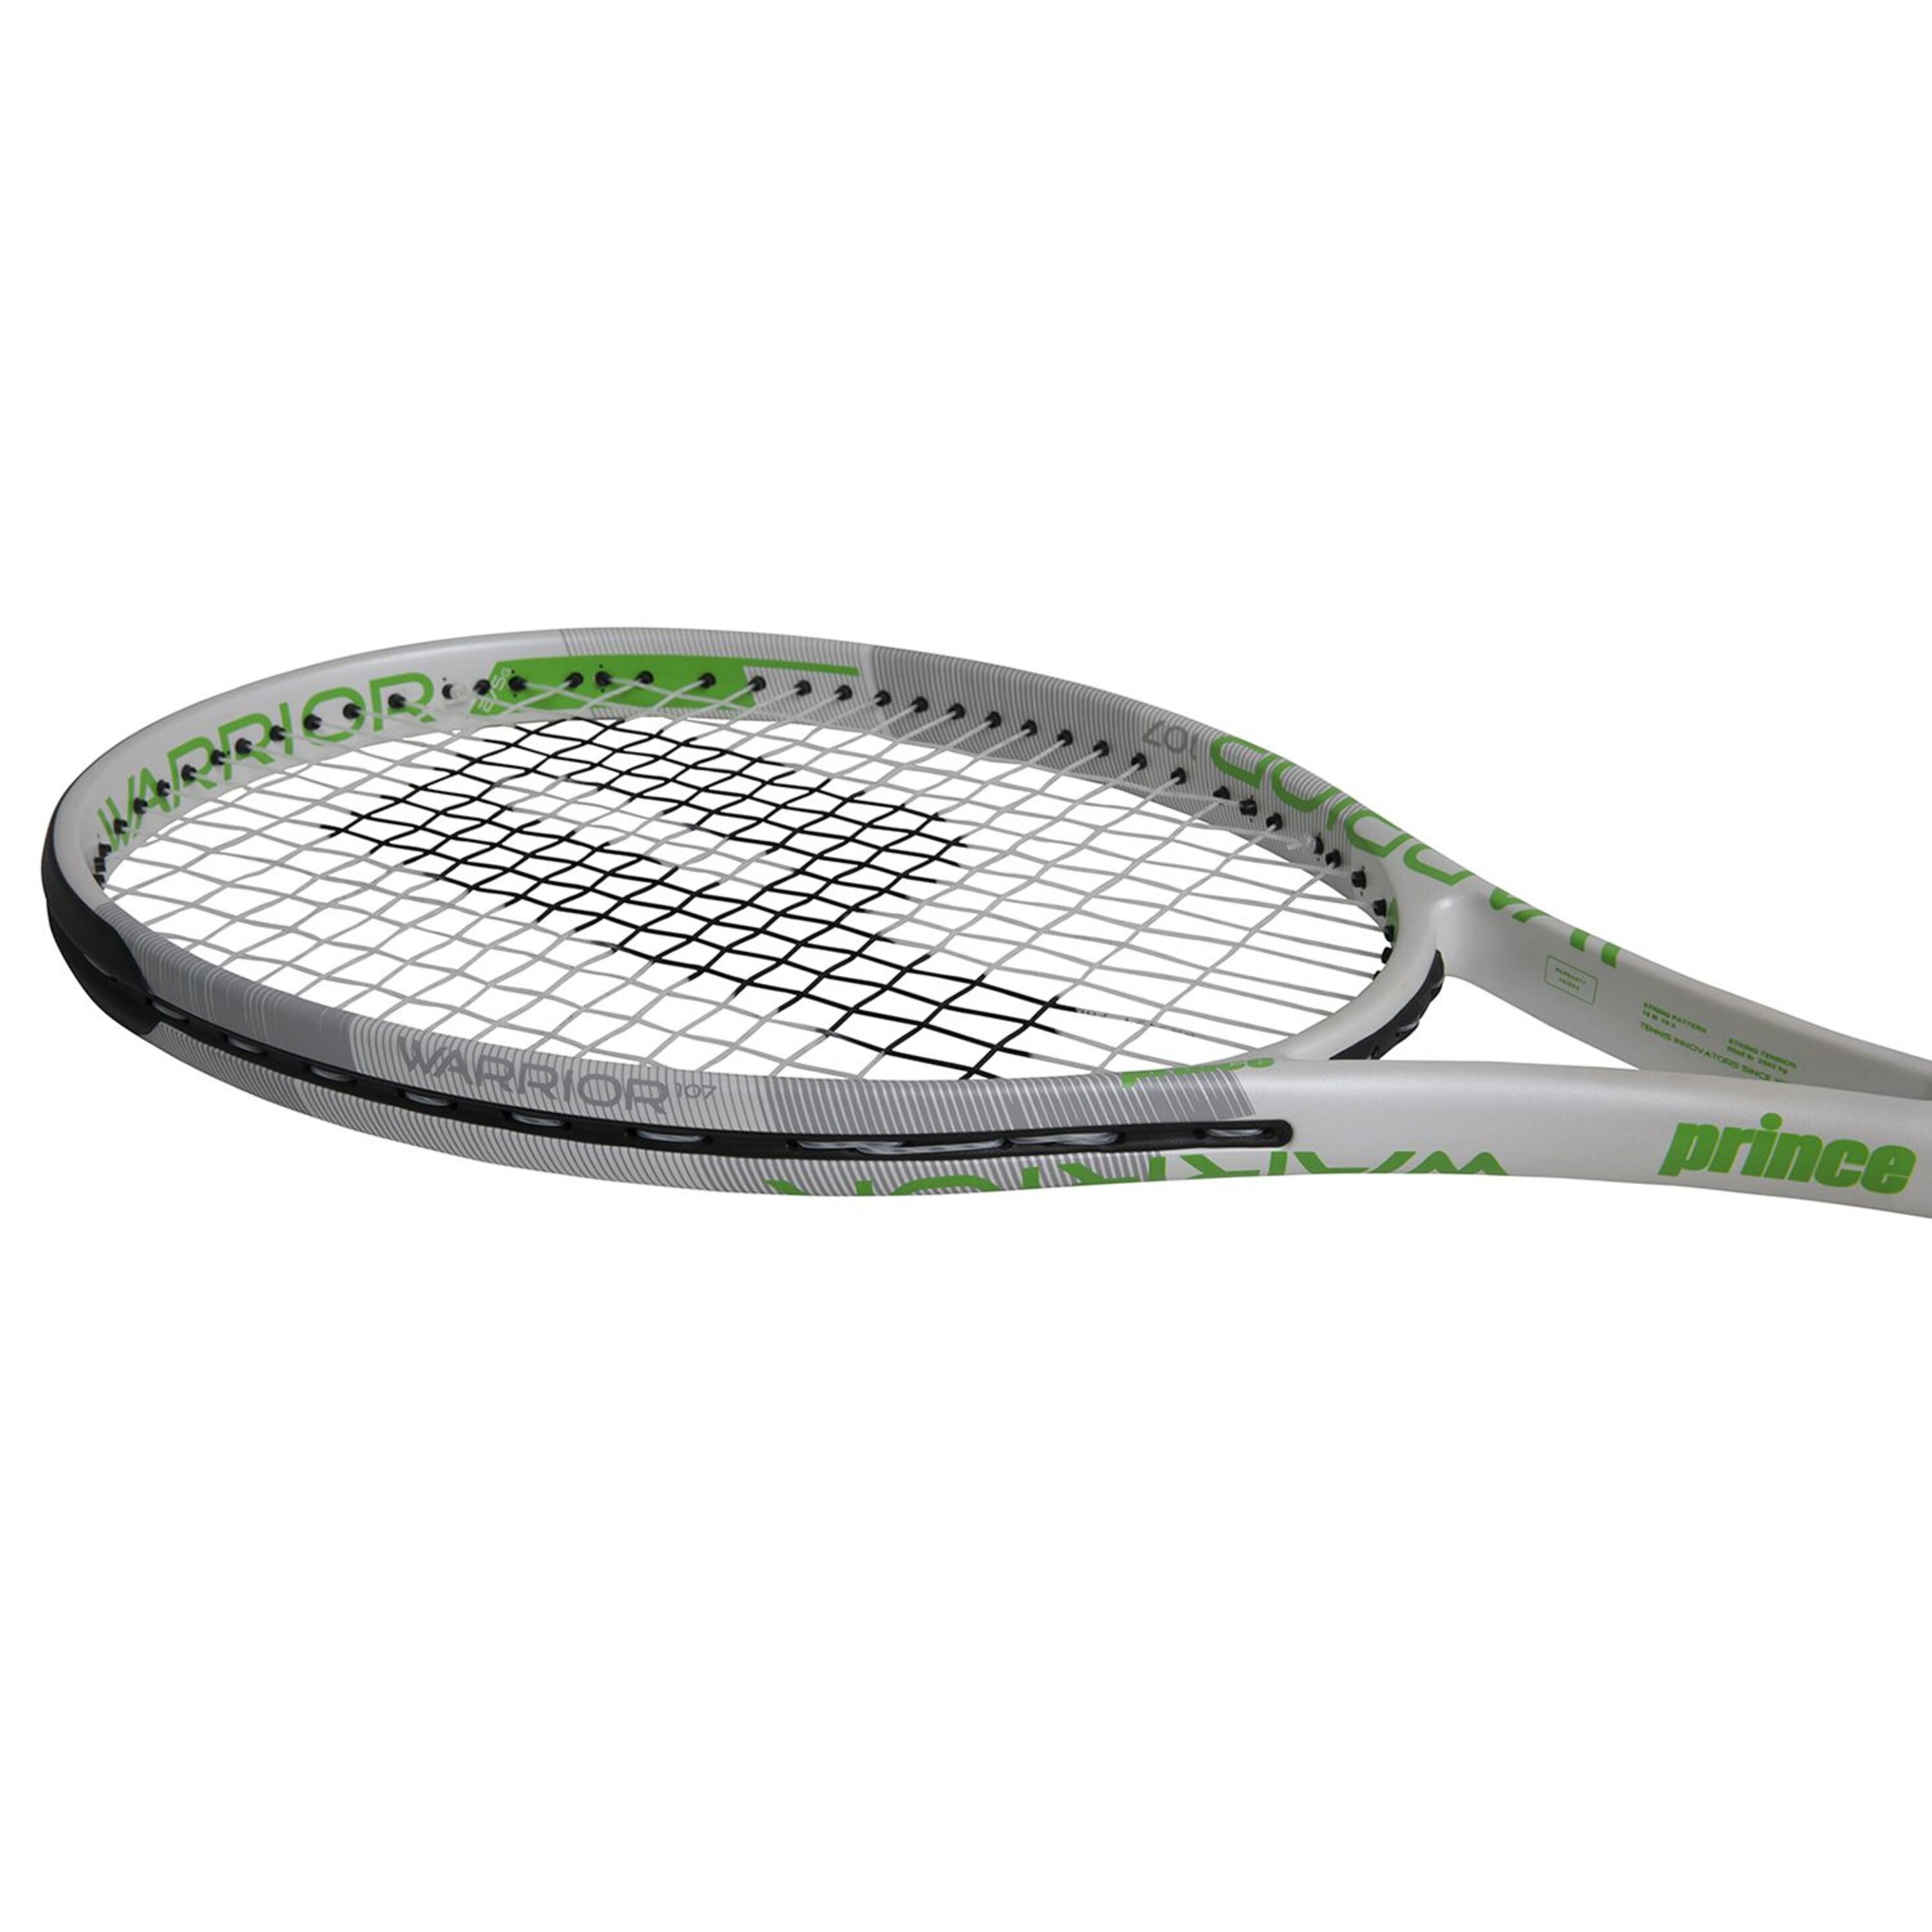 Raqueta De Tenis Prince Warrior 107 275 G (encordada Y Con Funda)